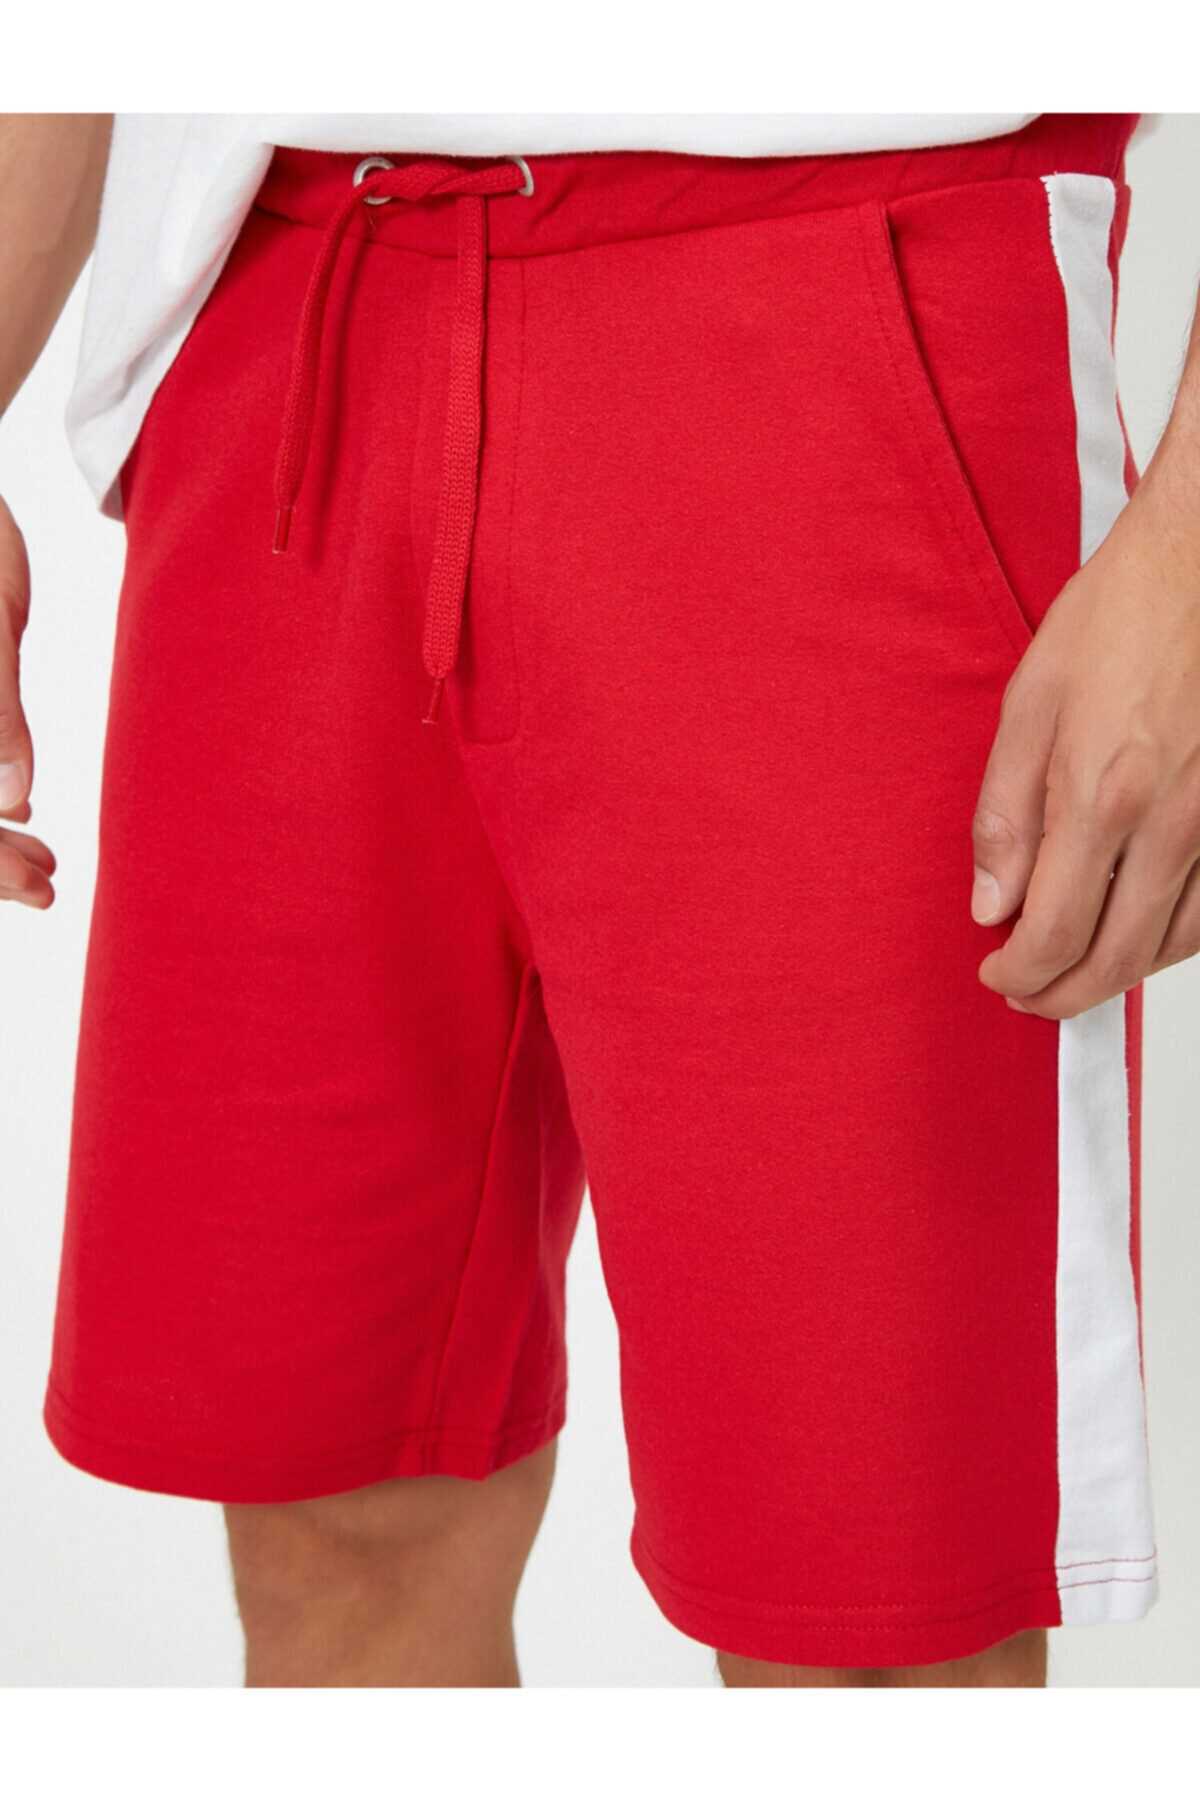 خرید اینترنتی شلوارک اصل برند کوتون رنگ قرمز ty47354133